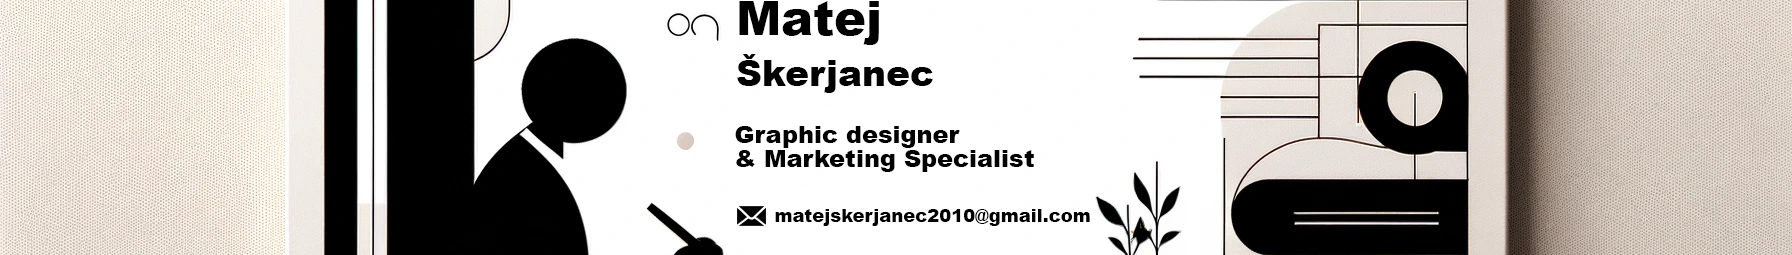 Matej Škerjanec's profile banner